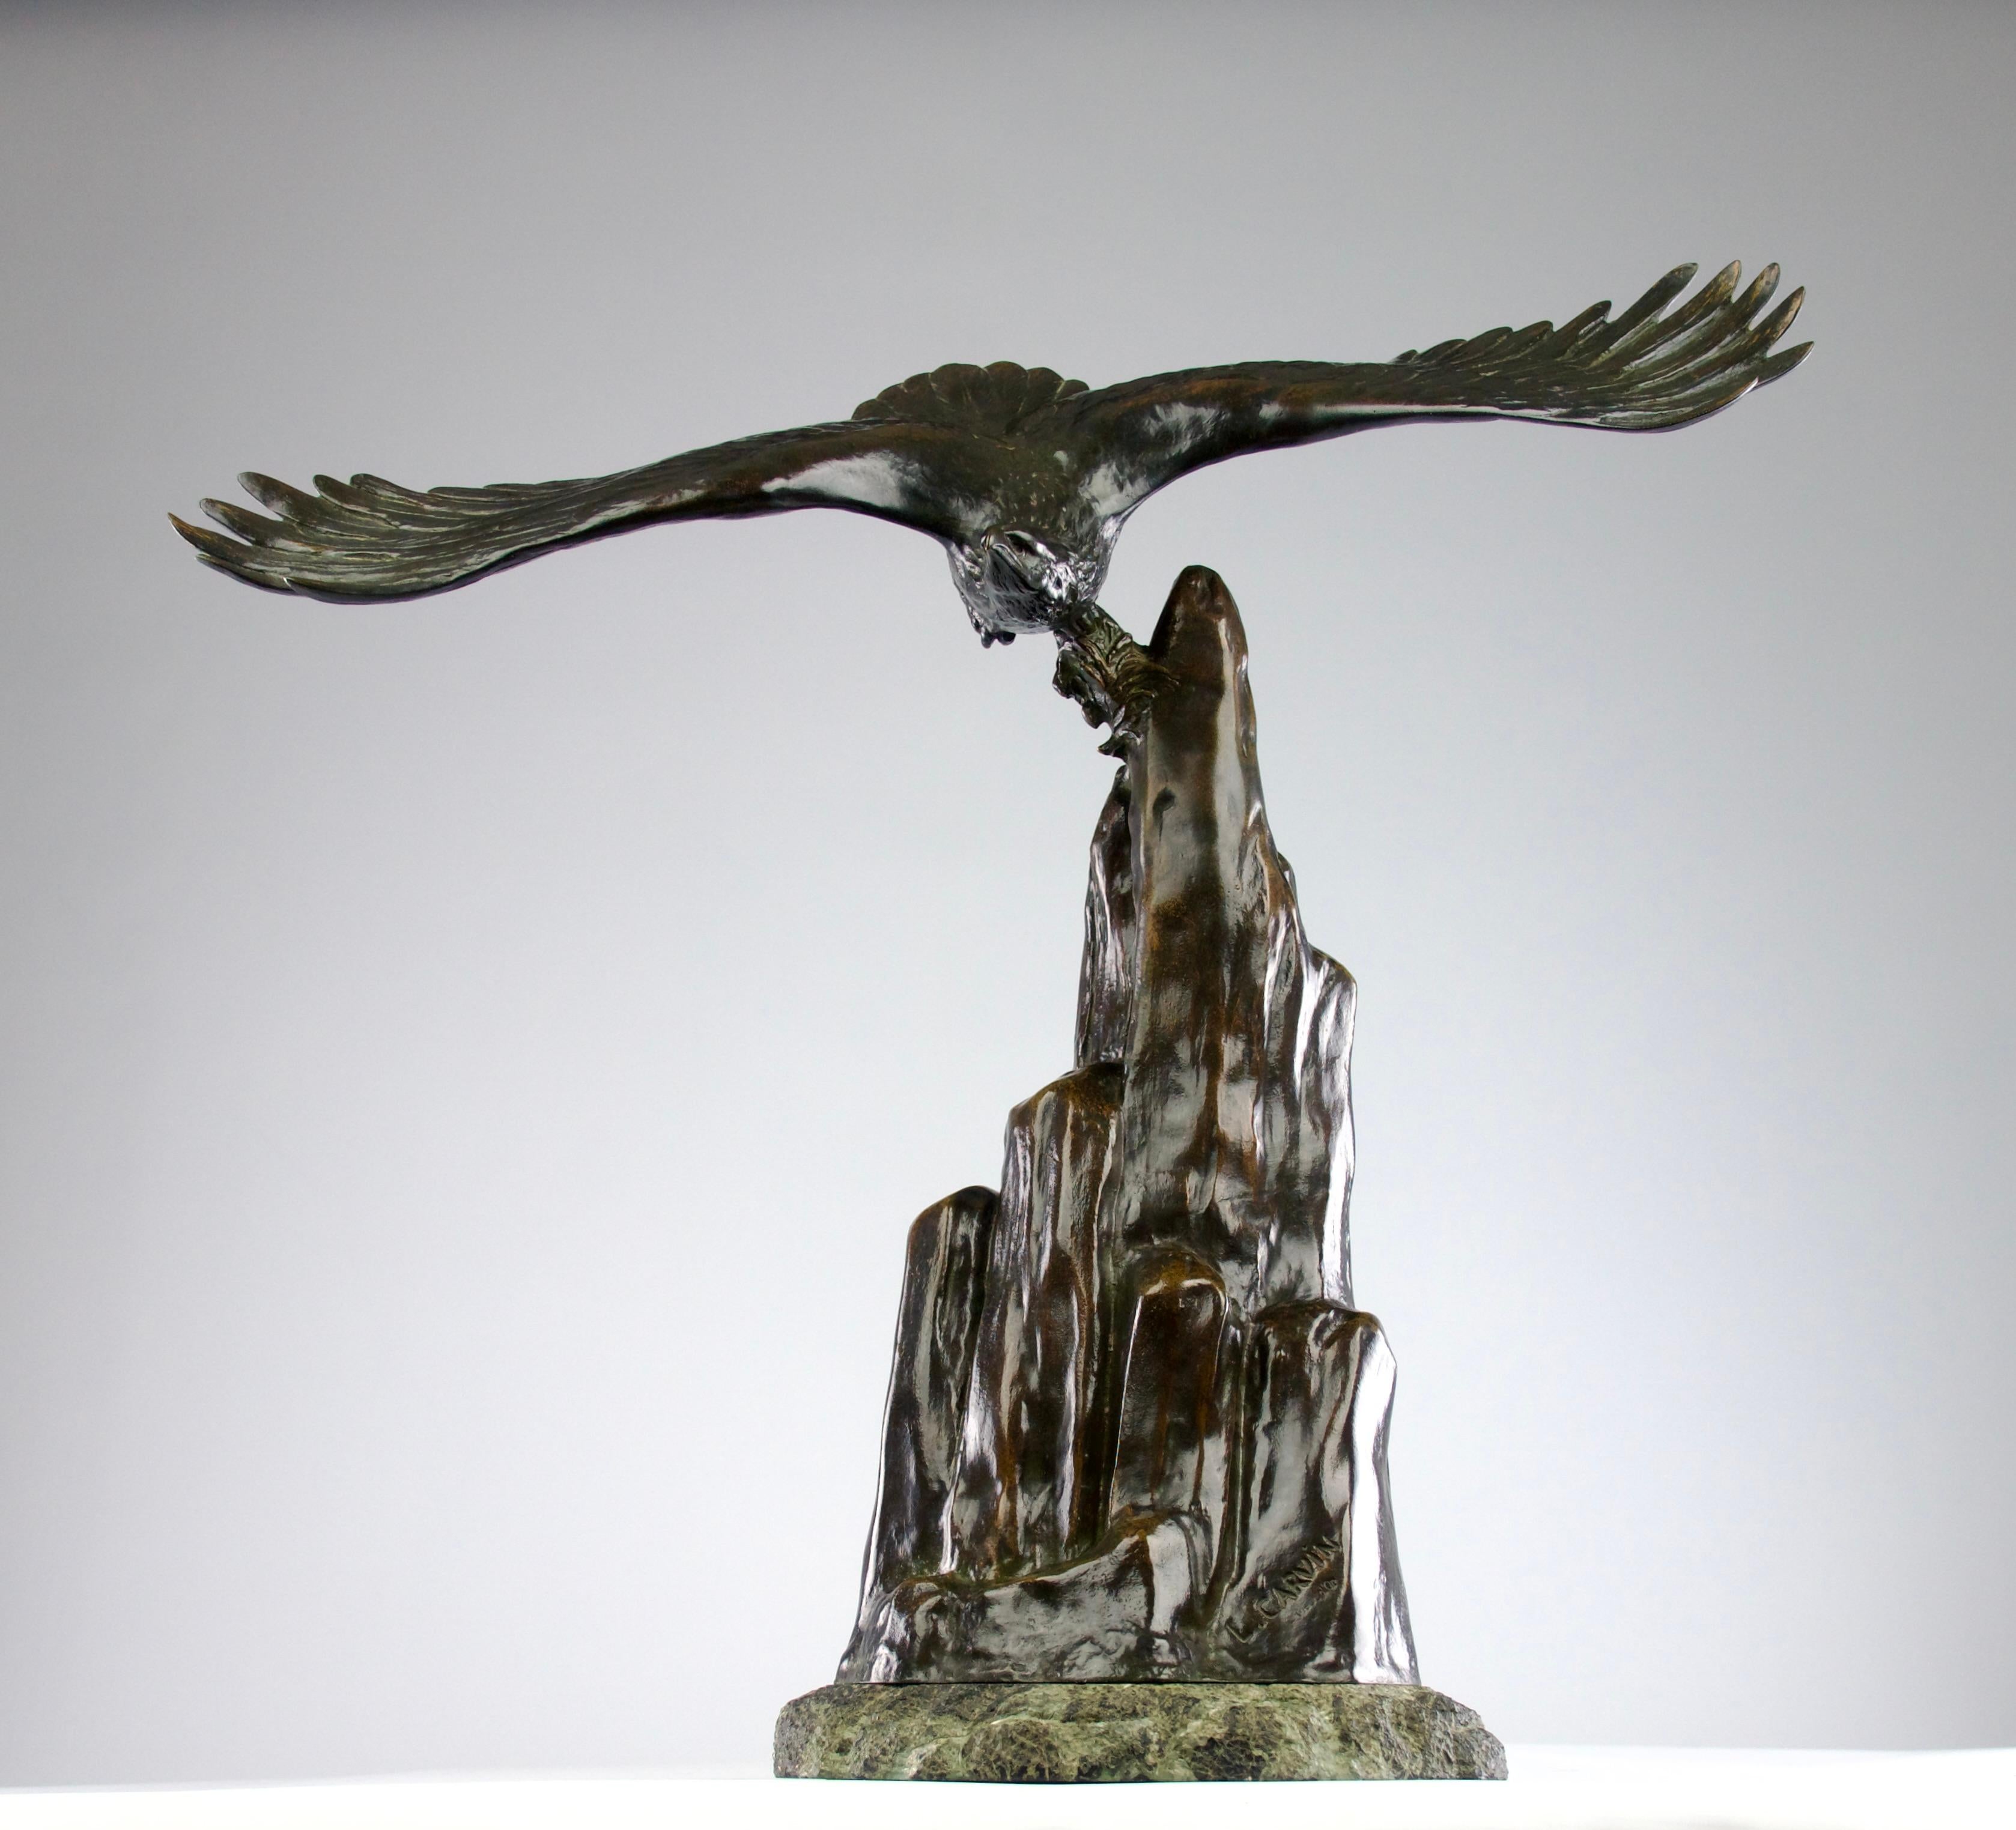 Absolut exquisite Bronzeskulptur von Louis-Albert Carvin, herausgegeben von der Gießerei R. Patrouilleau im Frankreich der 1920er Jahre. Lebendige Darstellung eines Adlers, der von einem Berg startet. Die Skulptur ist vom Künstler und Herausgeber